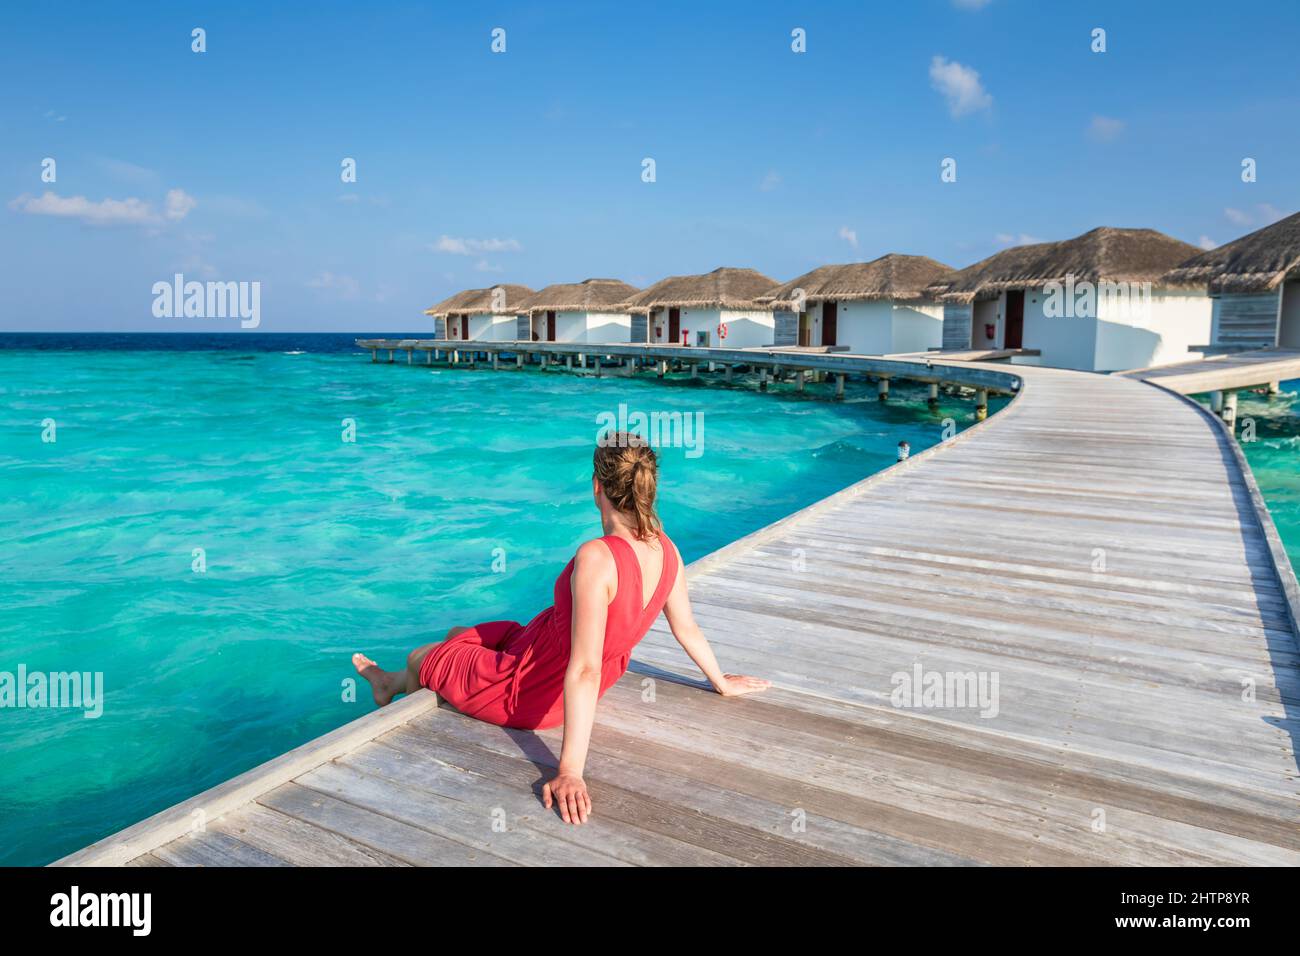 Vacaciones en la playa con una mujer relajándose en el muelle de madera en un lujoso hotel resort en Maldivas con villas sobre el agua, aguas turquesas y azules Foto de stock